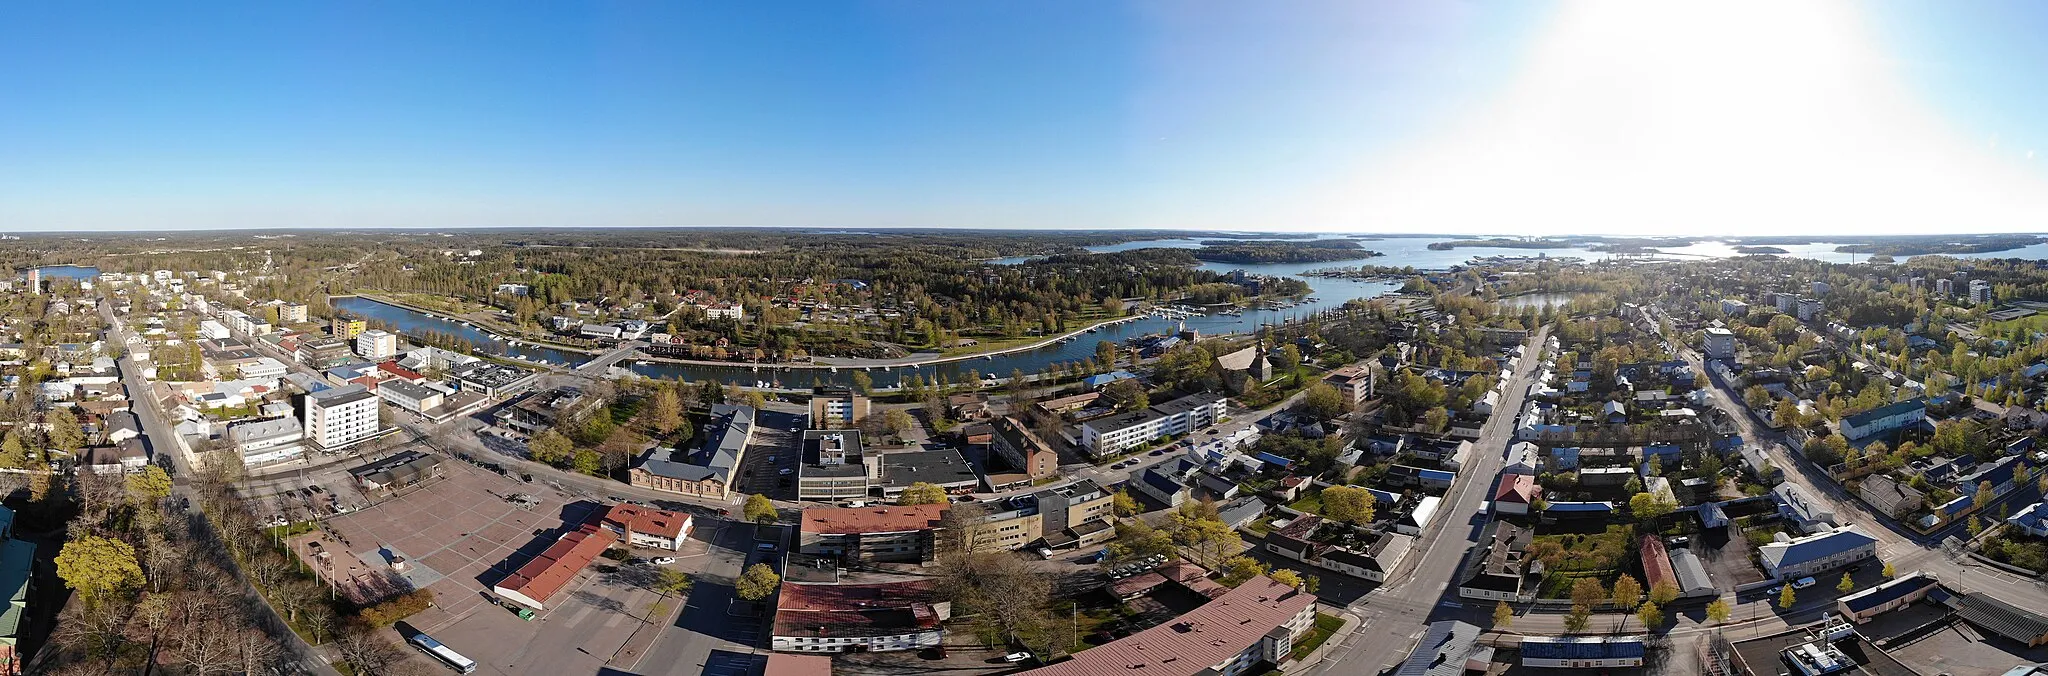 Image of Uusikaupunki